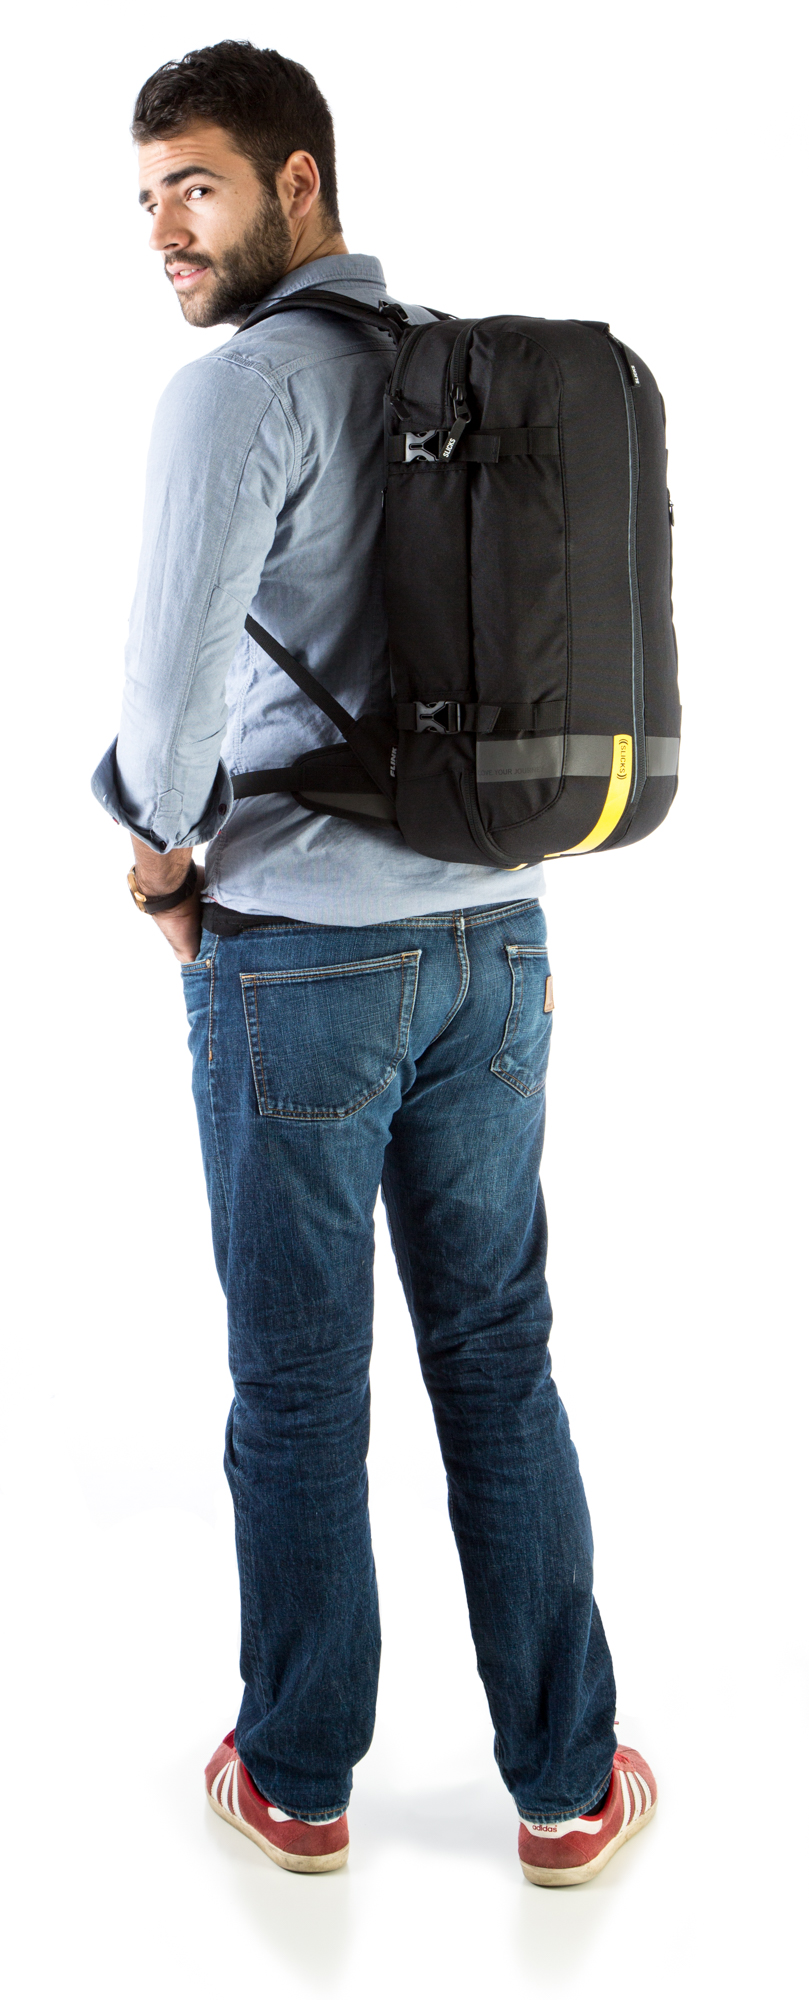 slicks travel backpack